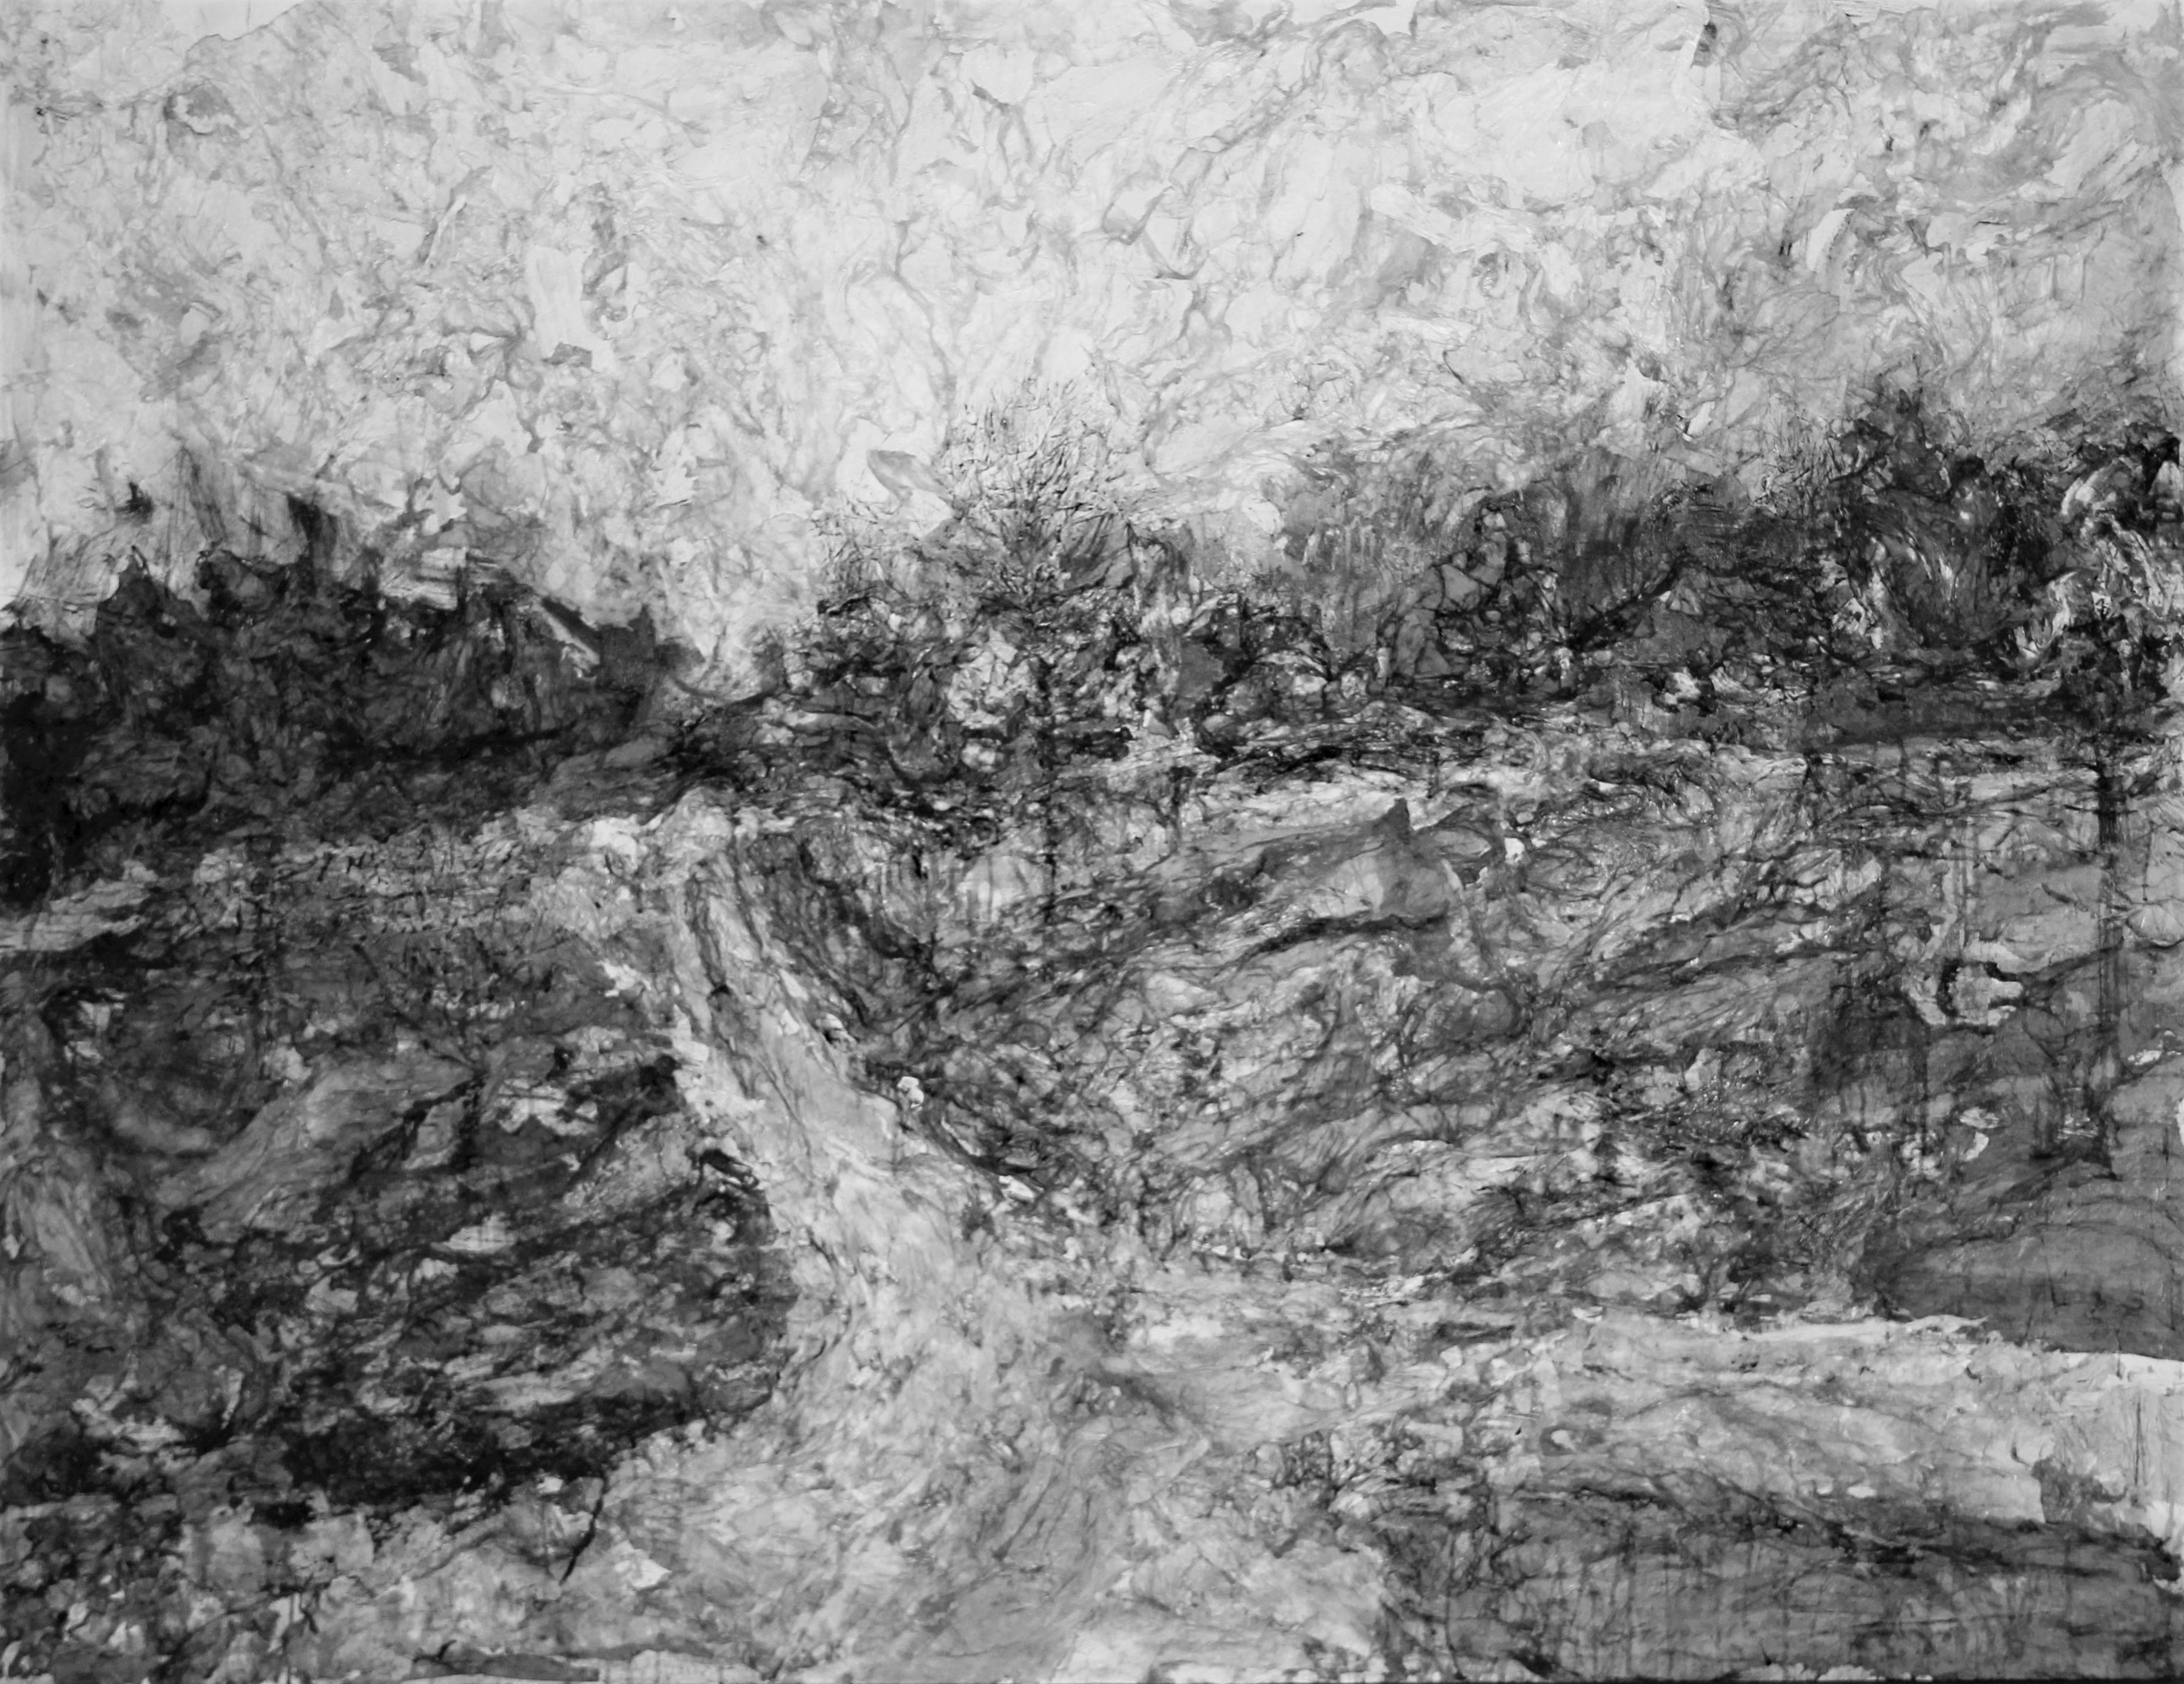 AsyaDodina SlavaPolishchuk Landscape Painting - Road 1, monochromatic landscape, black and white and grey